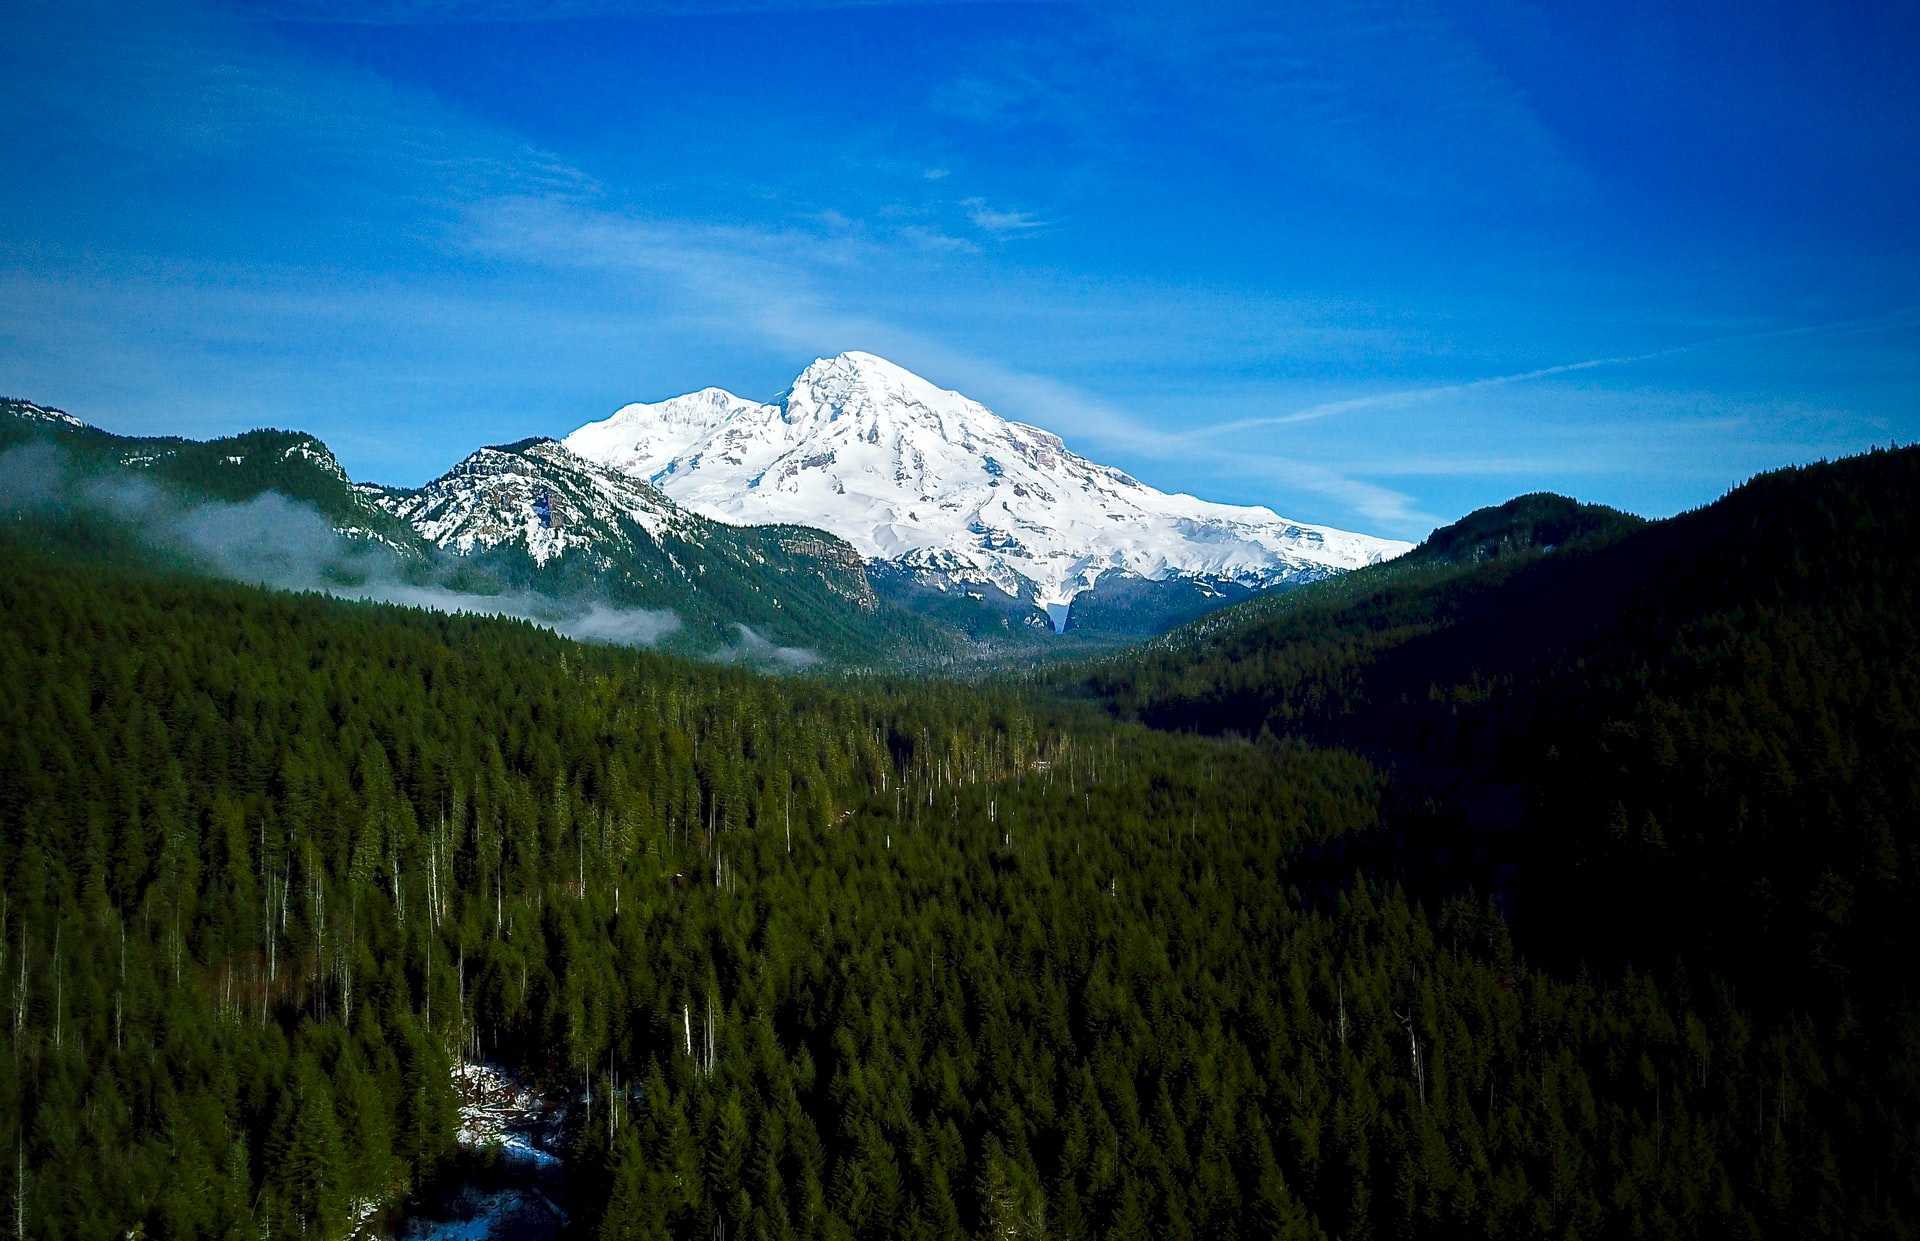 11. White River Campground, Mount Rainier - Washington